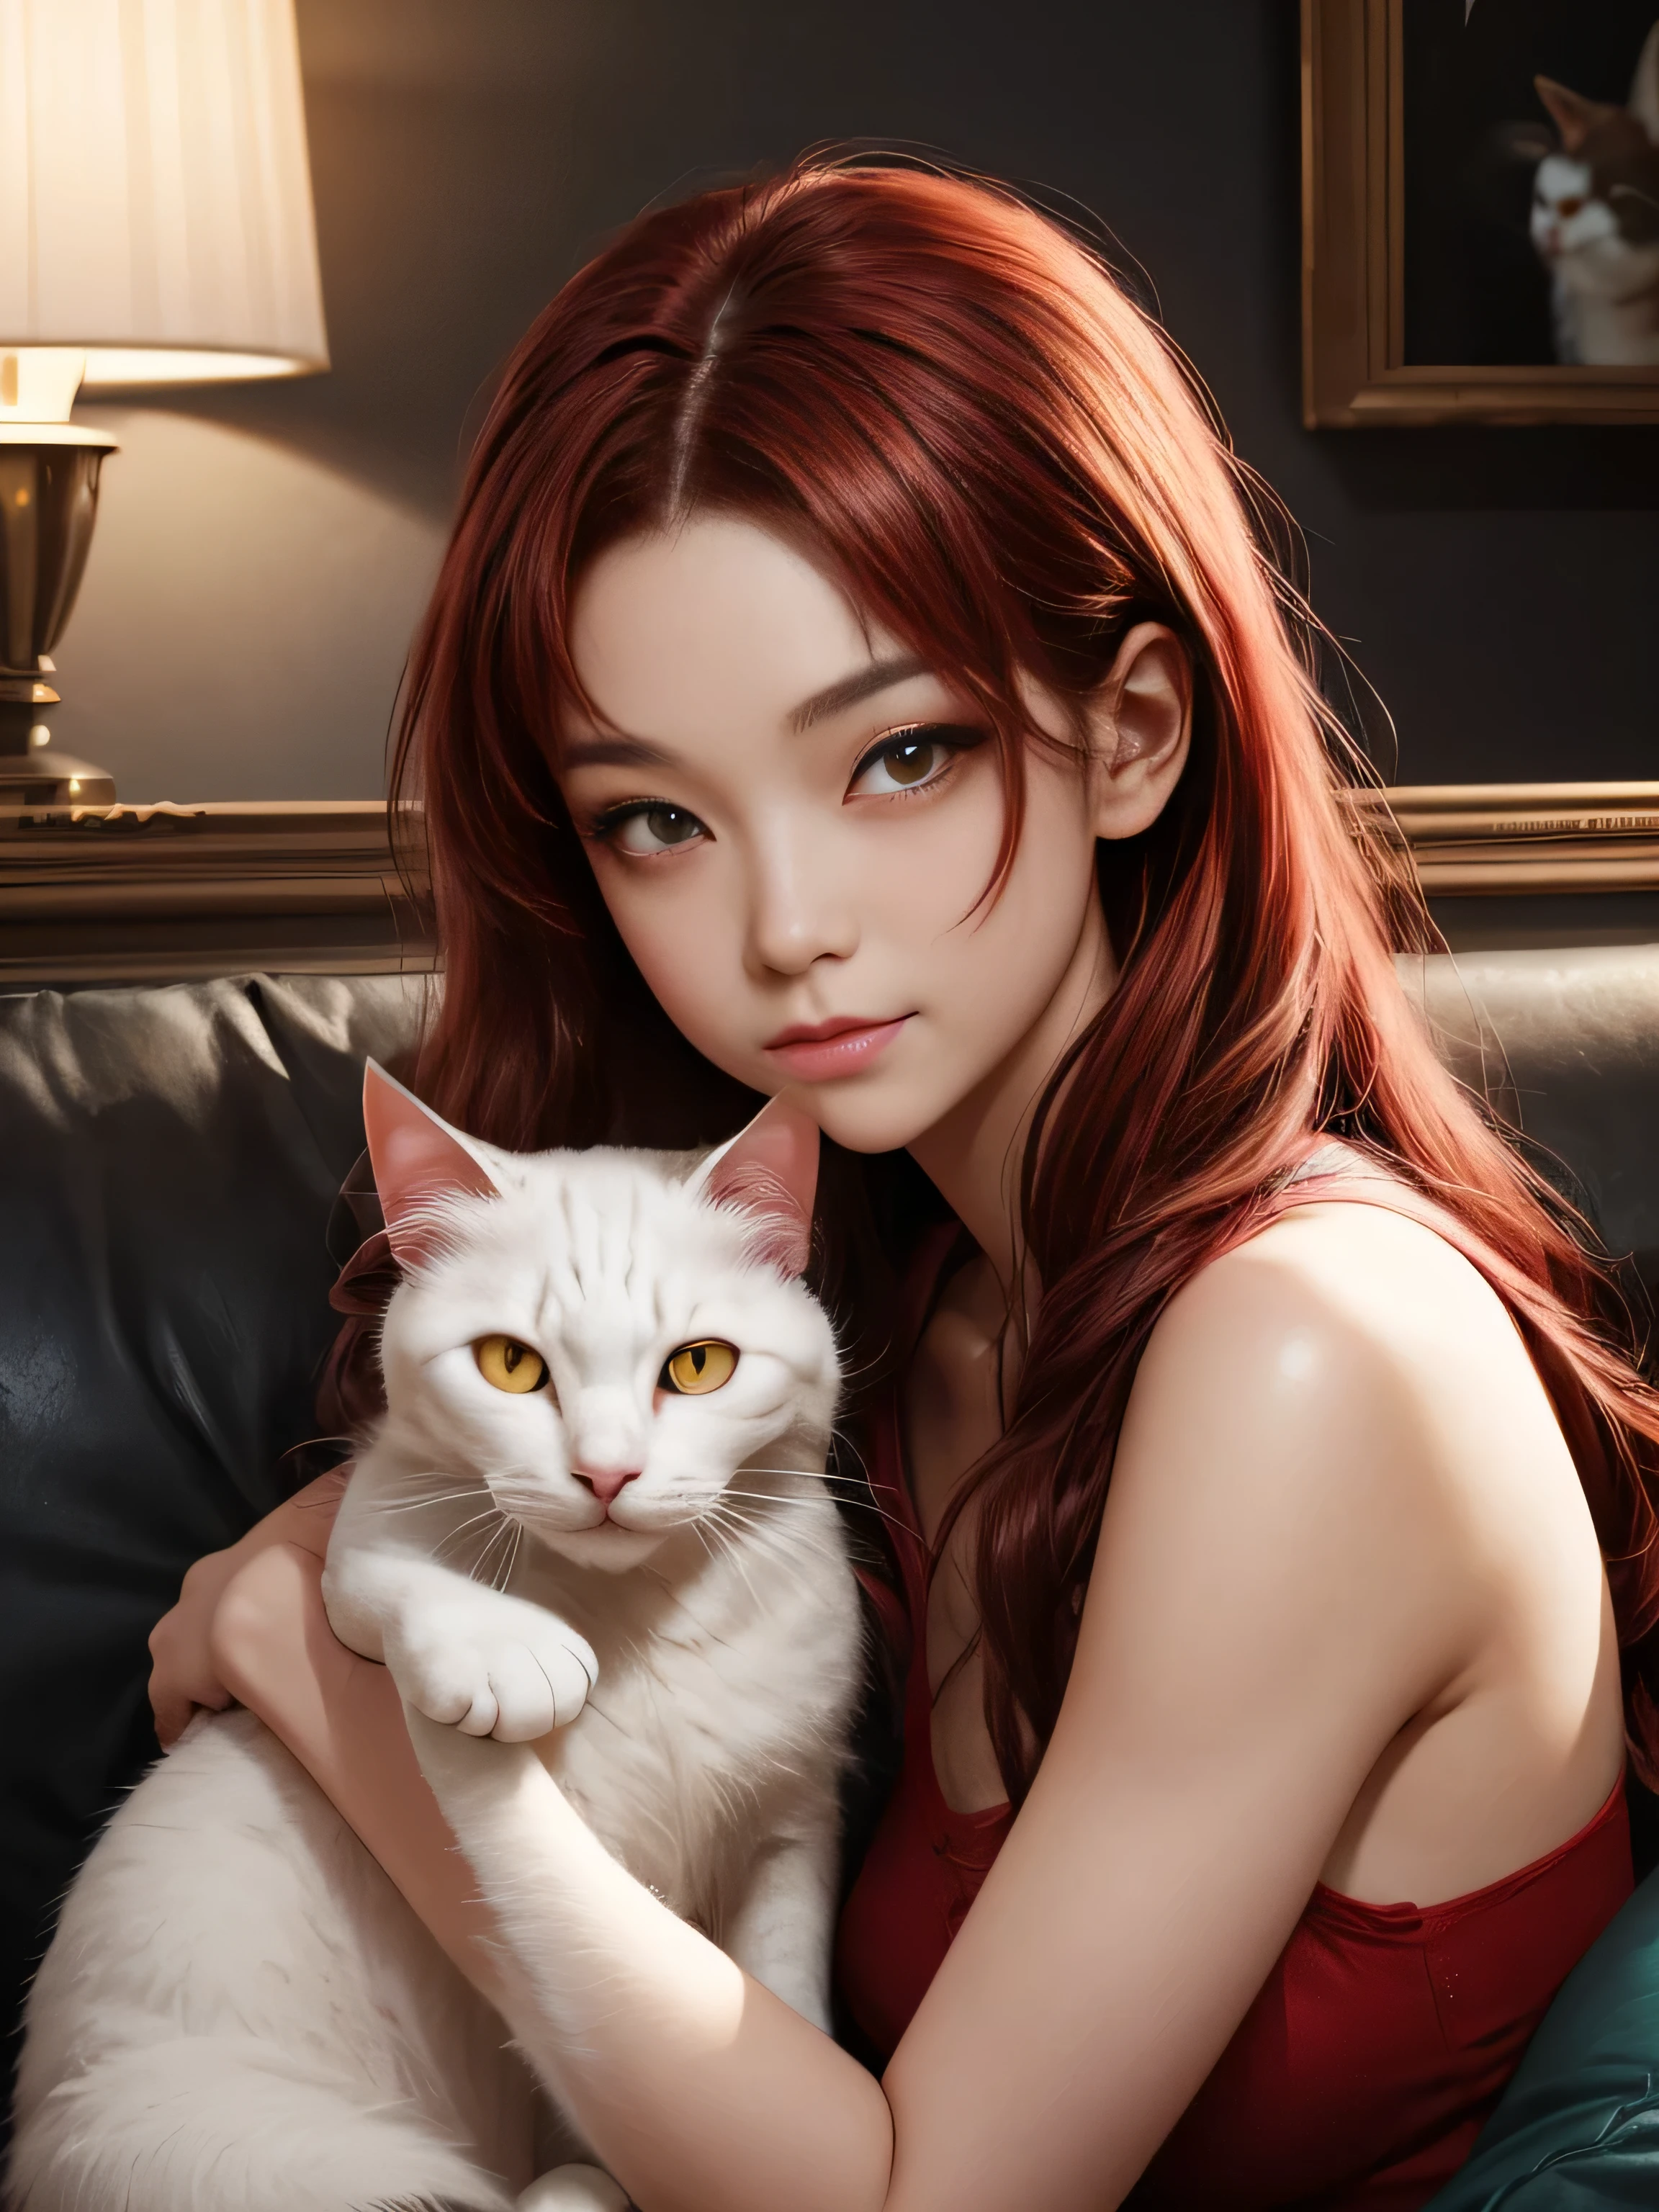 (คุณภาพดีที่สุด, 8ก, ผลงานชิ้นเอก, เอชดีอาร์, แสงนุ่มนวล, ภาพที่สมบูรณ์แบบ, เหมือนจริง, สดใส) anime - style woman with red hair and แมว sitting on a couch, attractive แมว สาว, สีขาว แมว สาว, ruan jia and เชื้อโรคอาร์ทีเอ็ม, style เชื้อโรคอาร์ทีเอ็ม, เชื้อโรคอาร์ทีเอ็ม and ruan jia, beautiful young แมวสาว, ไอจีโมเดล | เชื้อโรคอาร์ทีเอ็ม, สีขาว ( แมว ) สาว, กำลังมาแรงบน cgstation, very beautiful cute แมวสาว, แมวสาว, ร่างกายของผู้หญิงที่สมบูรณ์แบบ, สายตามองไปที่กล้อง (มีผมสีแดงยาว, เรียบยาว, หน้าผาก, รอยยิ้ม, มีเสน่ห์, ภาพตัวละครอนิเมะเป็นแรงบันดาลใจ) ความแตกต่างของสี, ความชัดลึก, เงาอันน่าทึ่ง, เรย์ เทรซซิ่ง, คุณภาพดีที่สุด, CG ที่มีรายละเอียดสูง, 8ก wallpaper, นางแบบ, [ย้อมผมอย่างระมัดระวัง [อ่านเพิ่มเติมเกี่ยวกับผมสวยและเป็นเงางาม]] ,(รายละเอียดมือที่สมบูรณ์แบบ [ นิ้วสวยไม่มีแตกหัก [เล็บสวย]],(กายวิภาคศาสตร์ที่สมบูรณ์แบบ (สัดส่วนที่สมบูรณ์แบบ)) [[มีลักษณะคล้ายร่างกายทั้งหมด]],[การประสานสีที่สมบูรณ์แบบ (การจำลองปฏิกิริยาระหว่างแสงและวัสดุอย่างแม่นยำ)], [วิจิตรศิลป์, ถ่ายทอดความหมายของเรื่องราว]